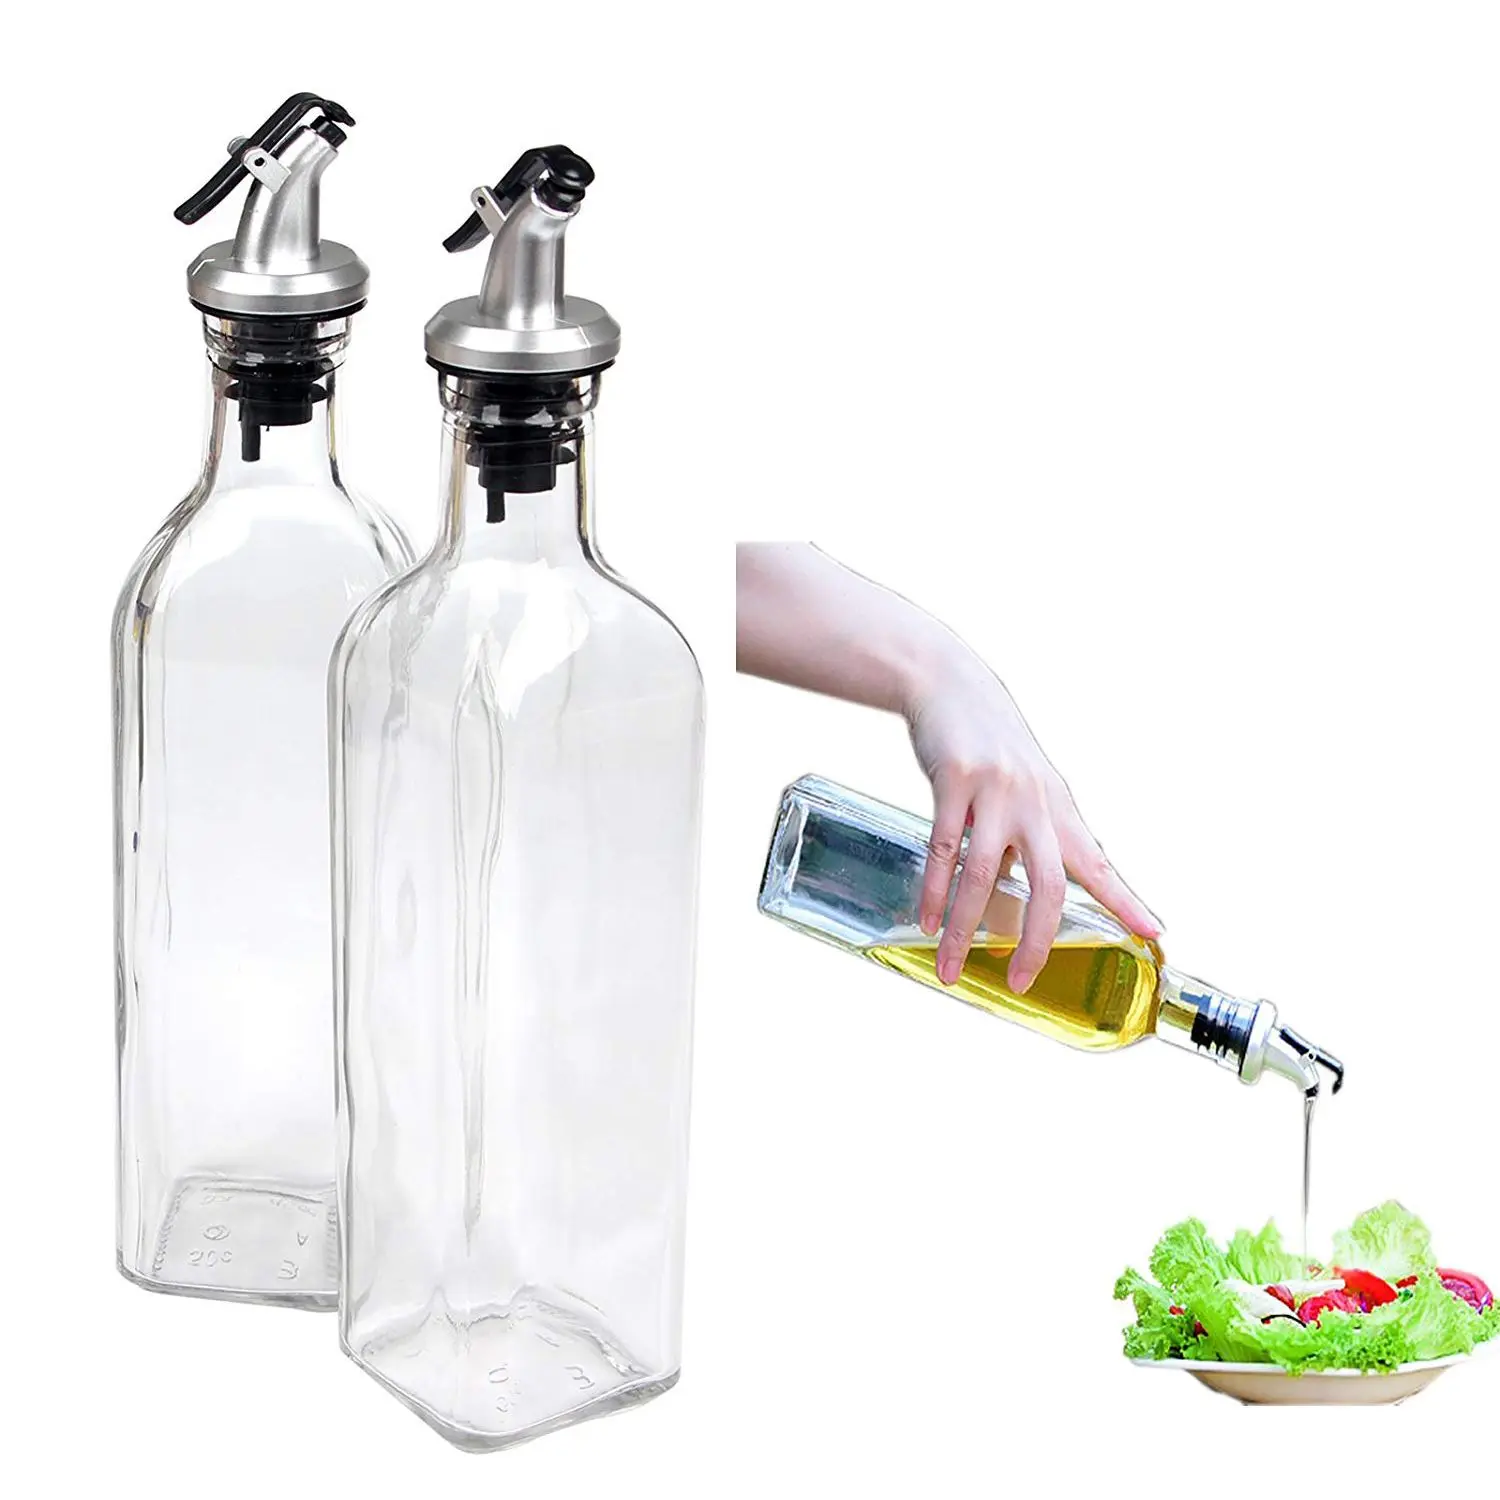 Фото Cruet диспенсер для масла стеклянная бутылка контейнер приготовления пищи носик